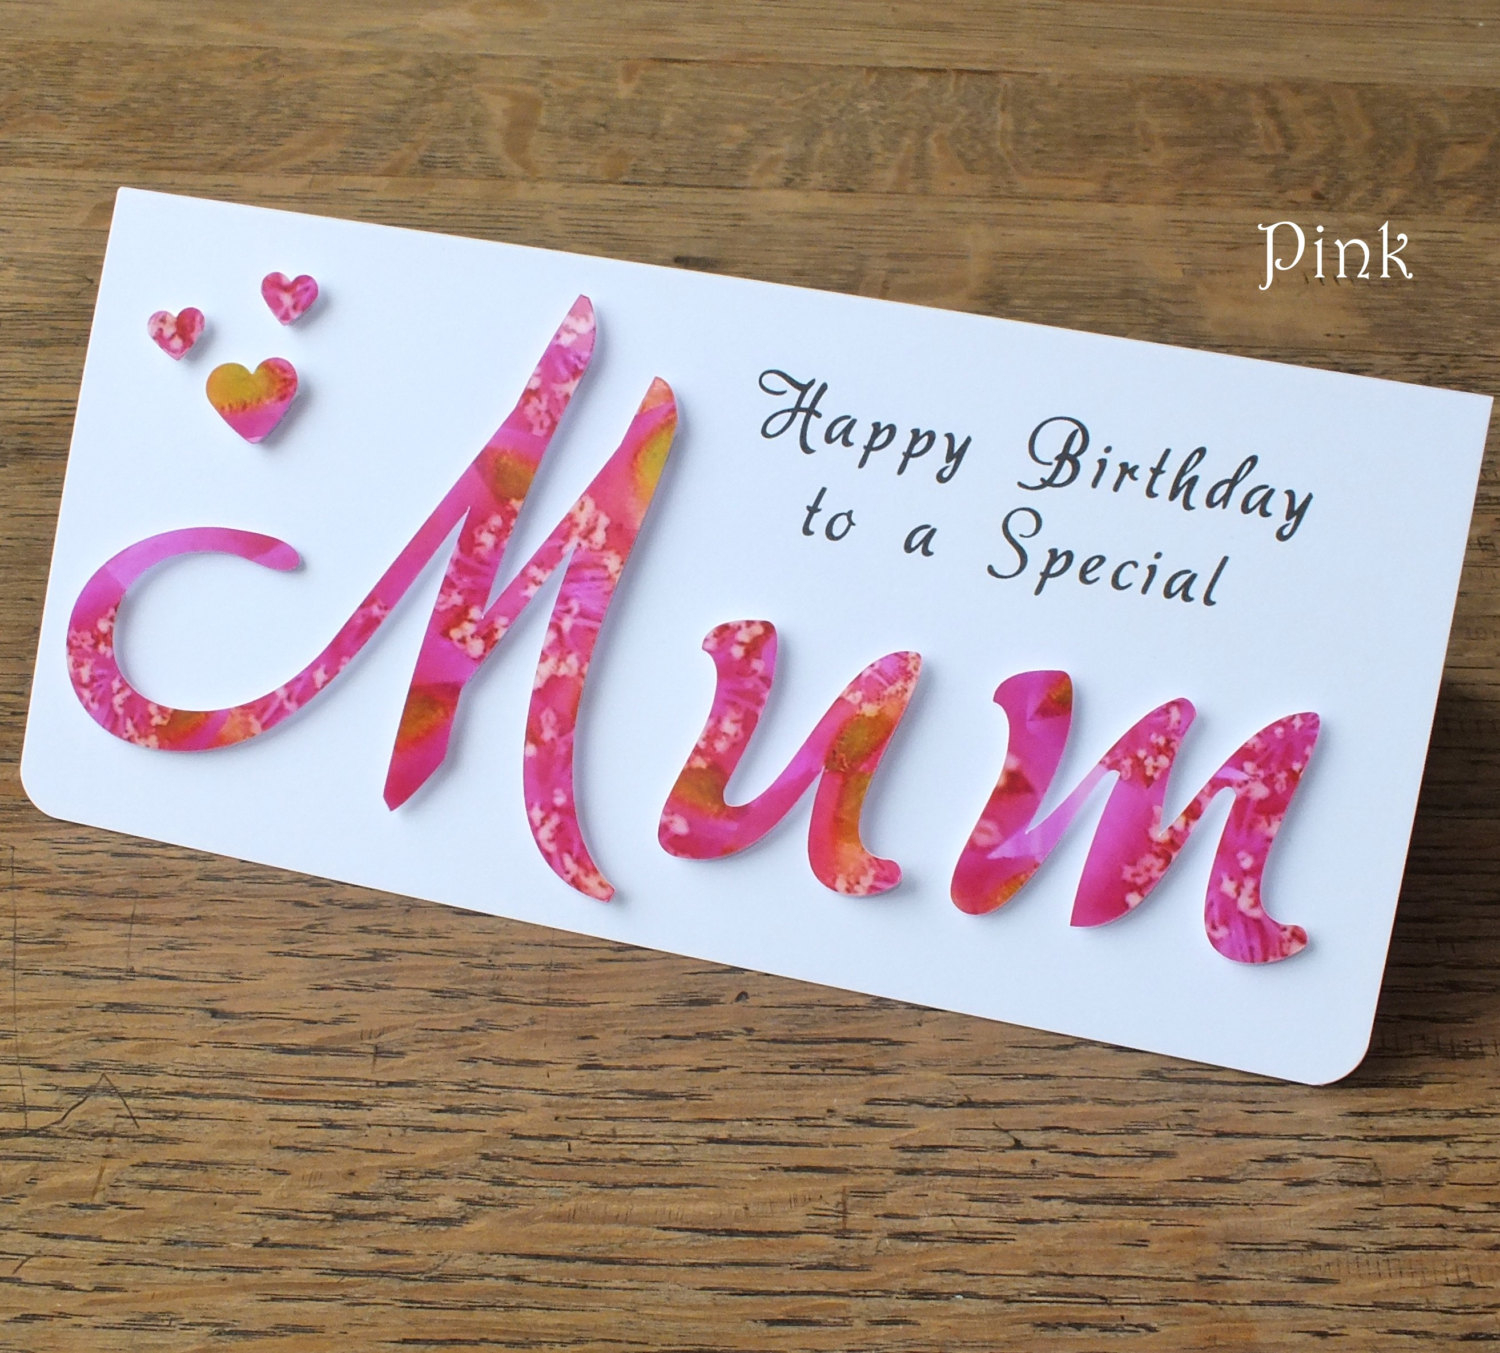 Creative Birthday Card Ideas For Mom 98 Ideas For Moms Birthday Card Lovely Birthday Cards For Moms Or